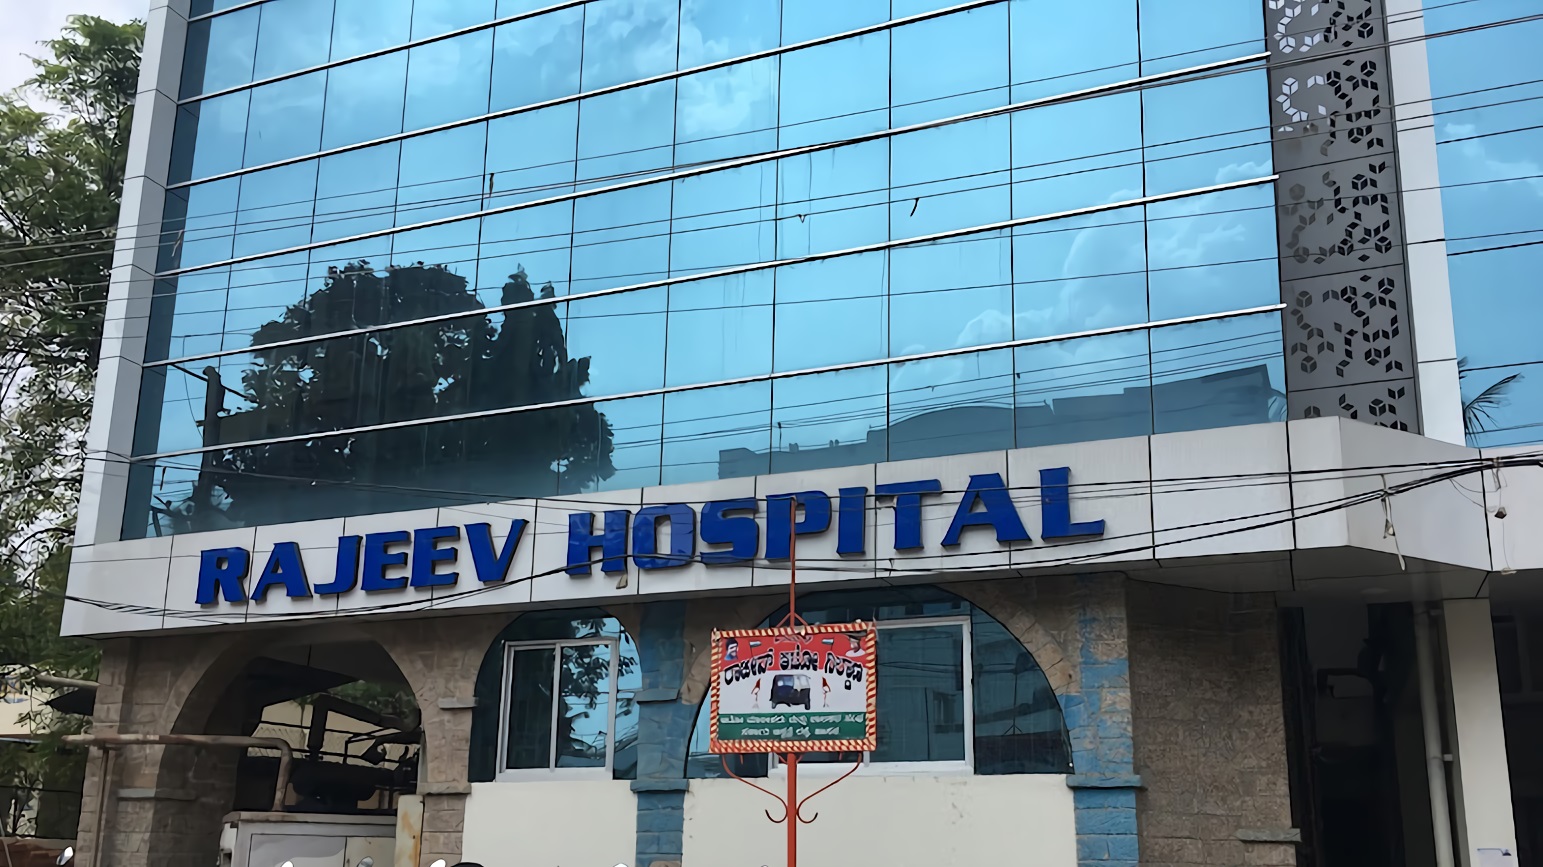 Rajeev Hospital